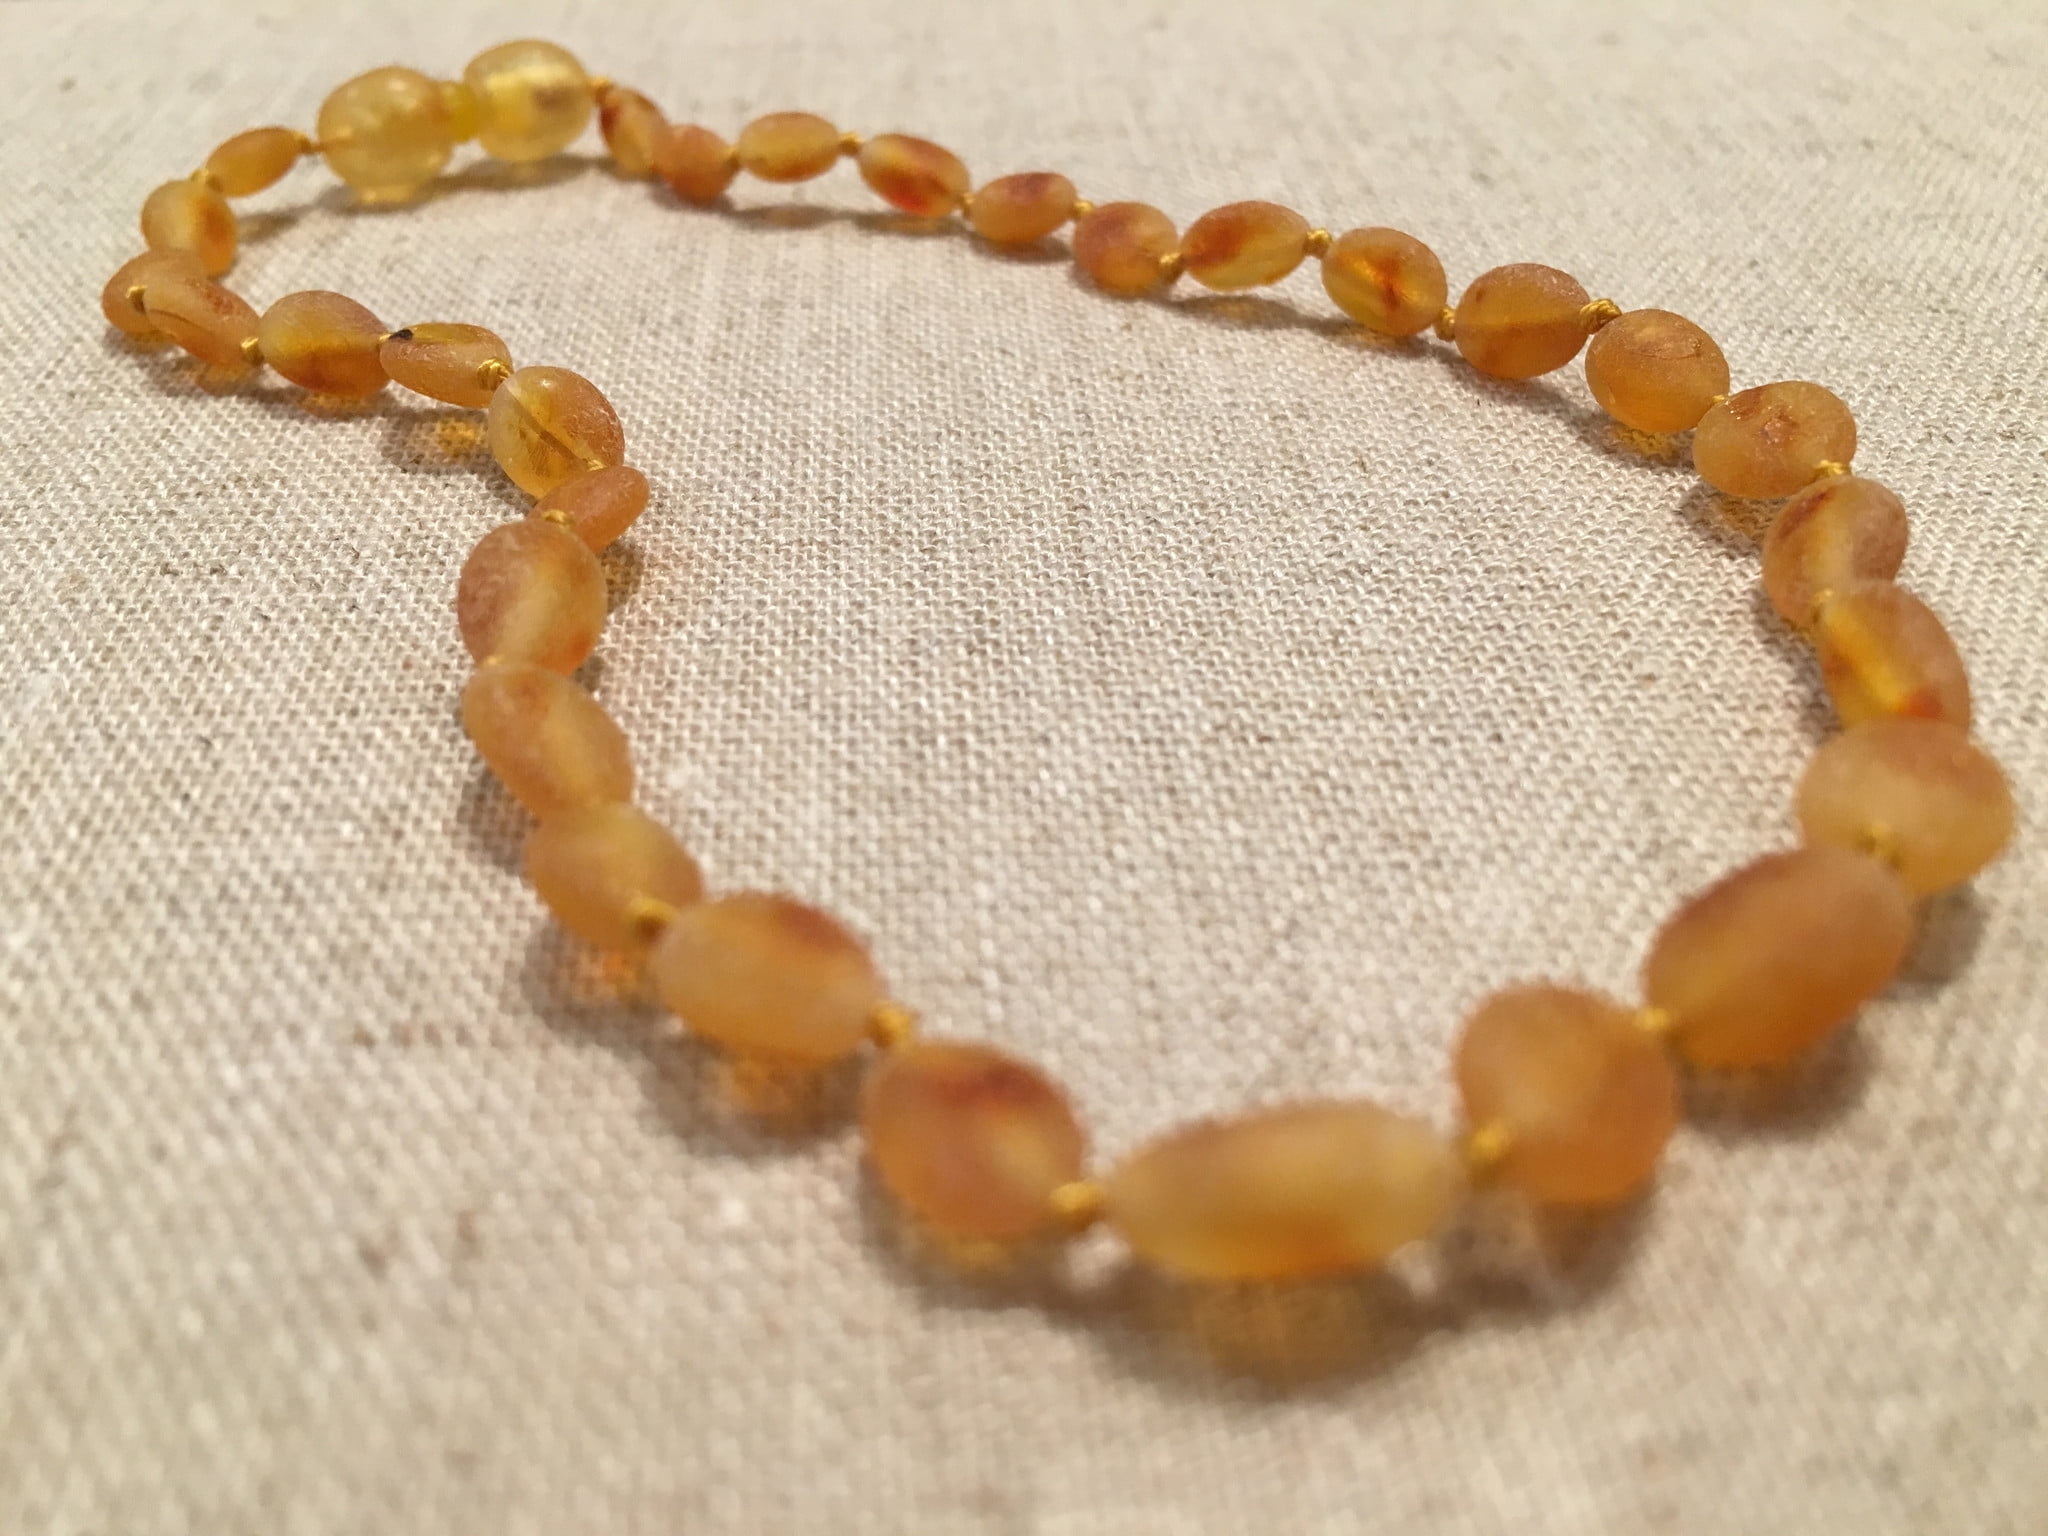 unpolished amber necklace